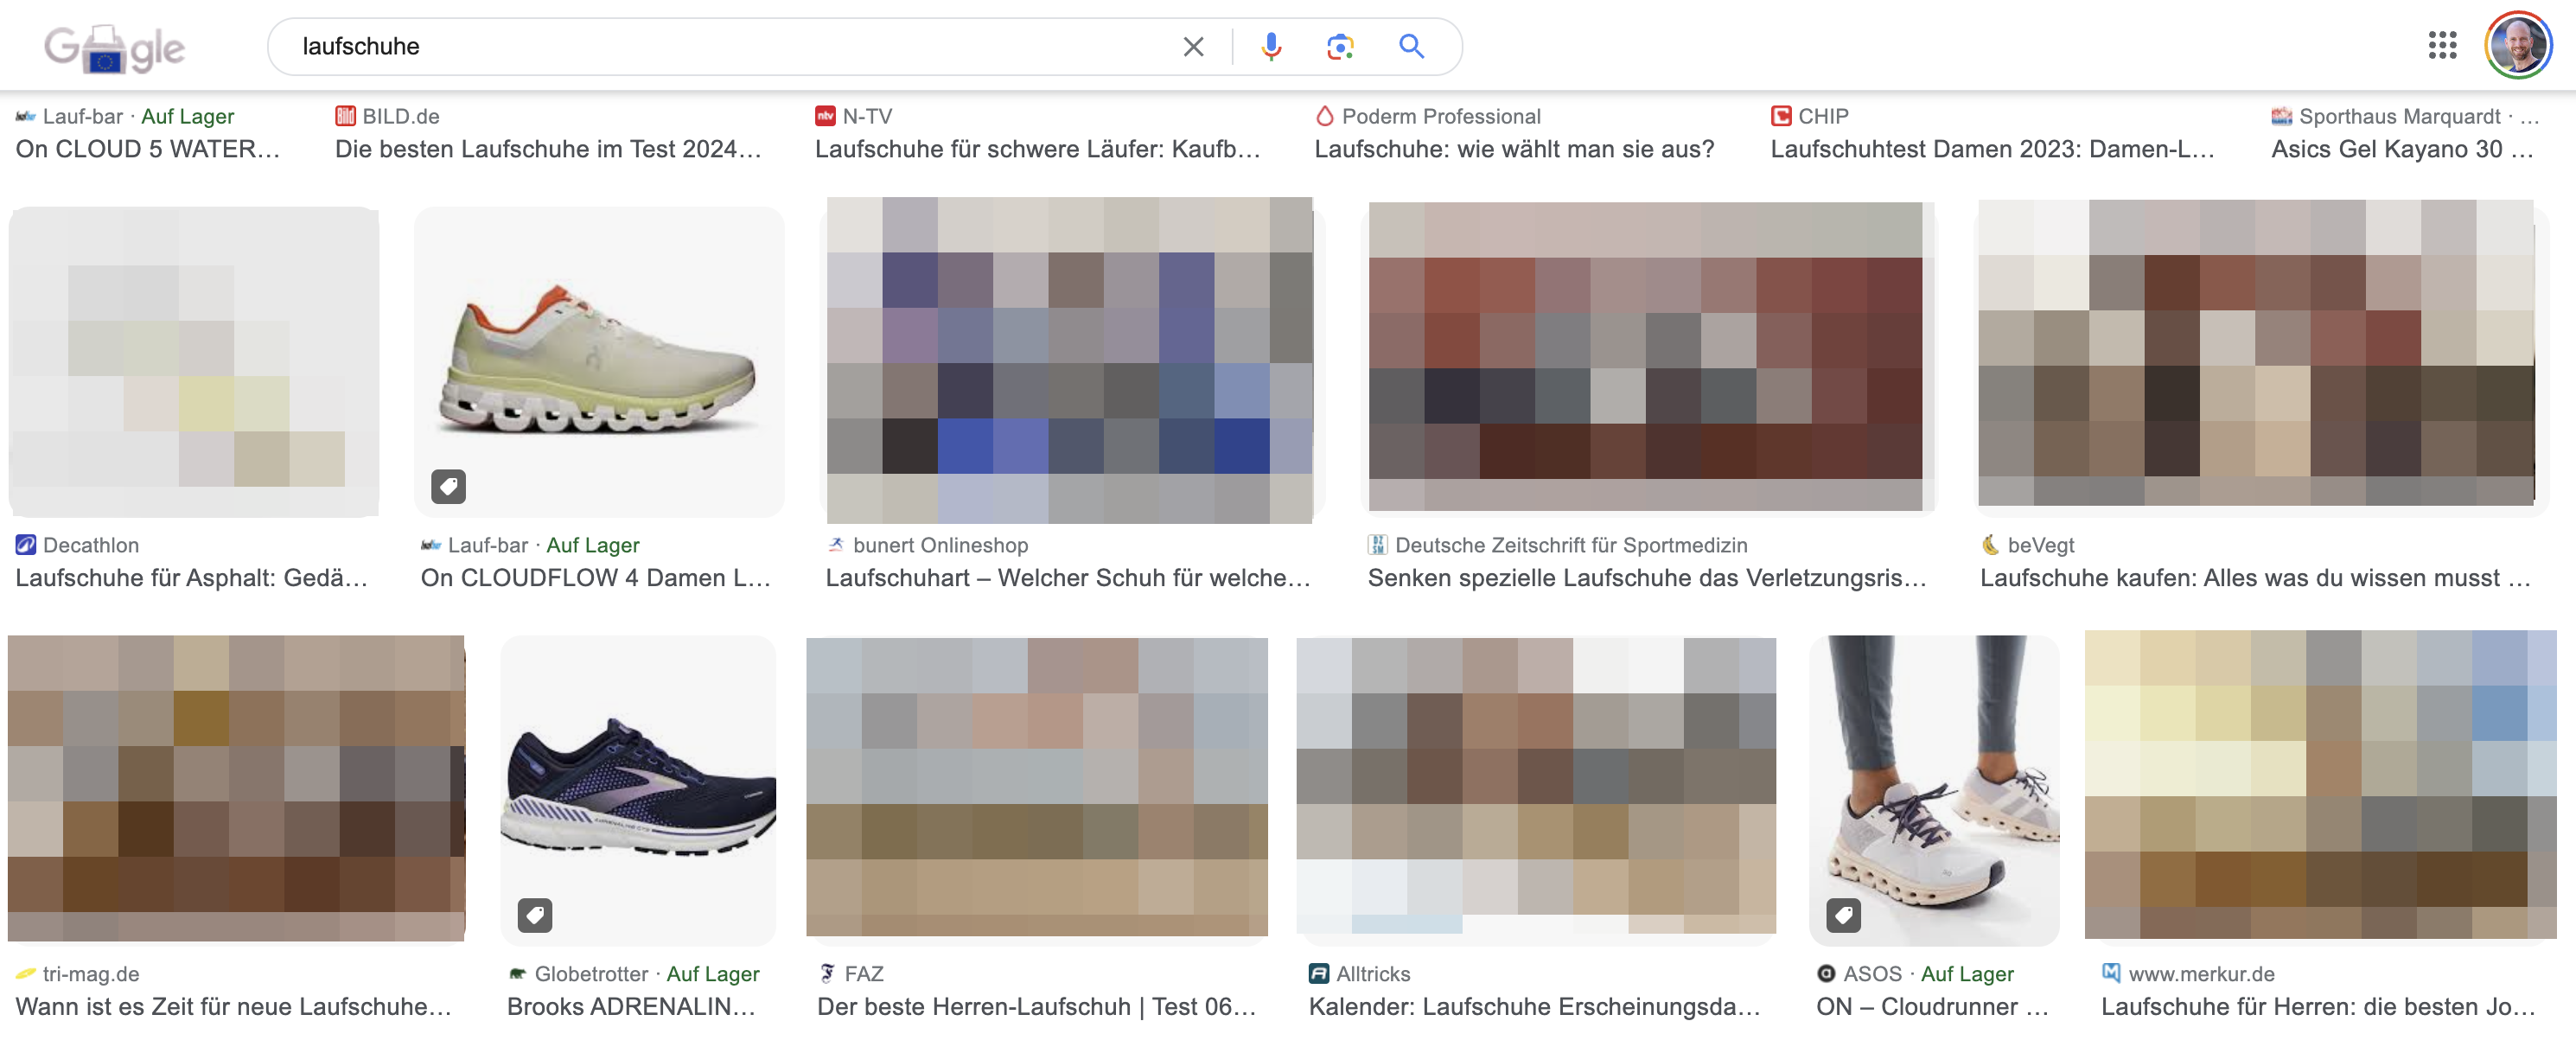 Google Bildersuche mit Produkt-Label